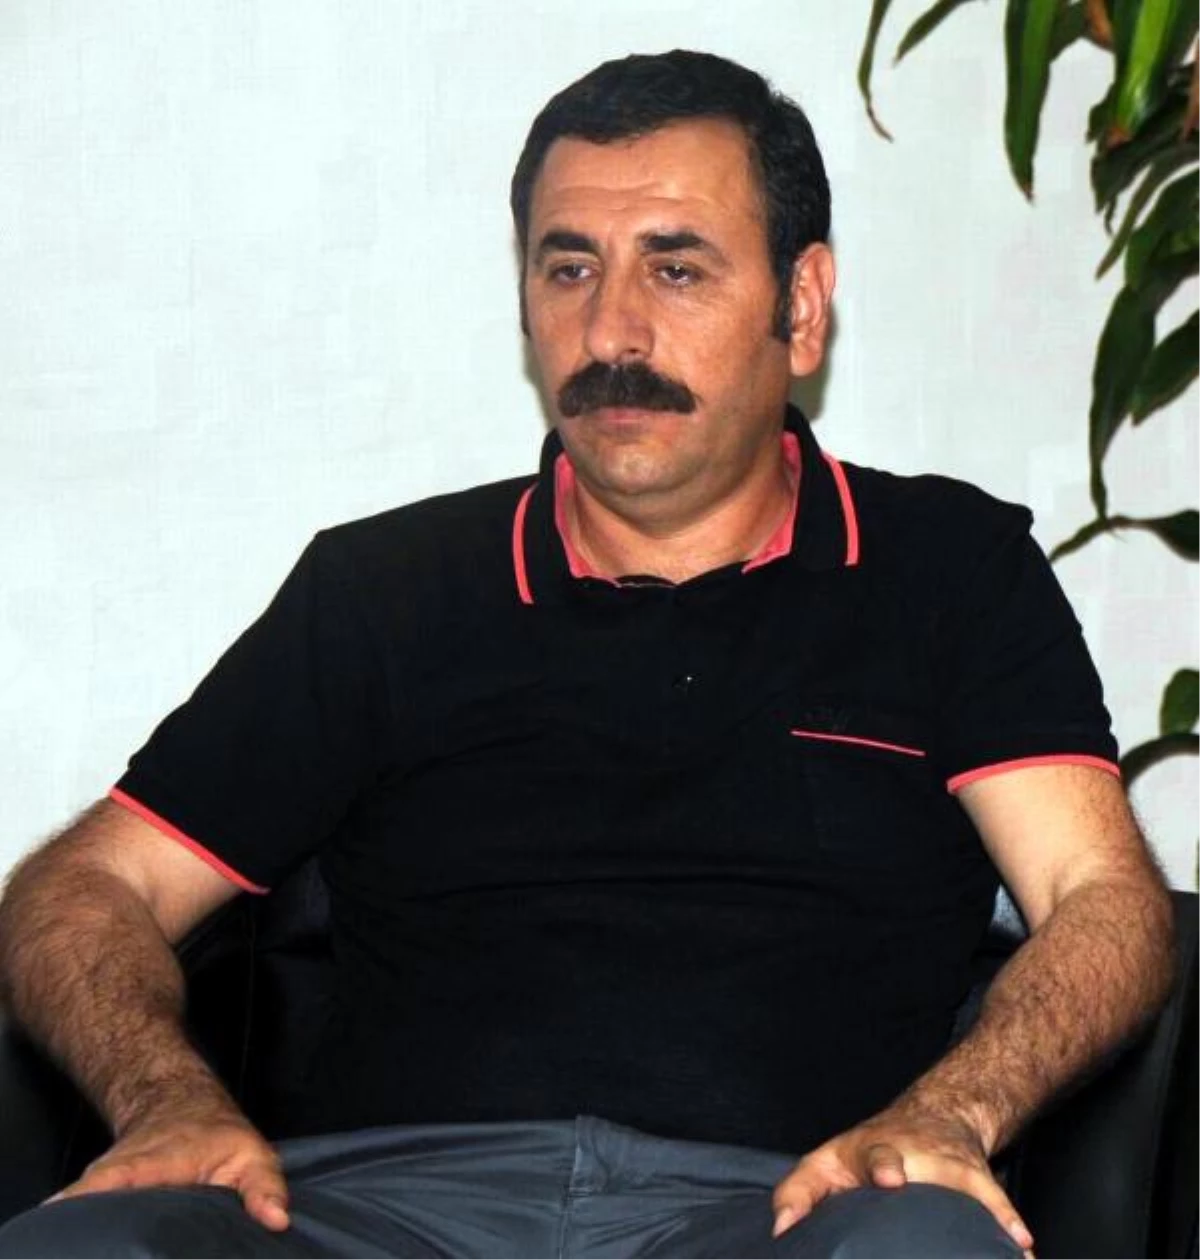 Diyarbakır İnşaat Mühendisleri Odası Başkanı: Siren Sistemi Görmedik, Büyük İhmal Var